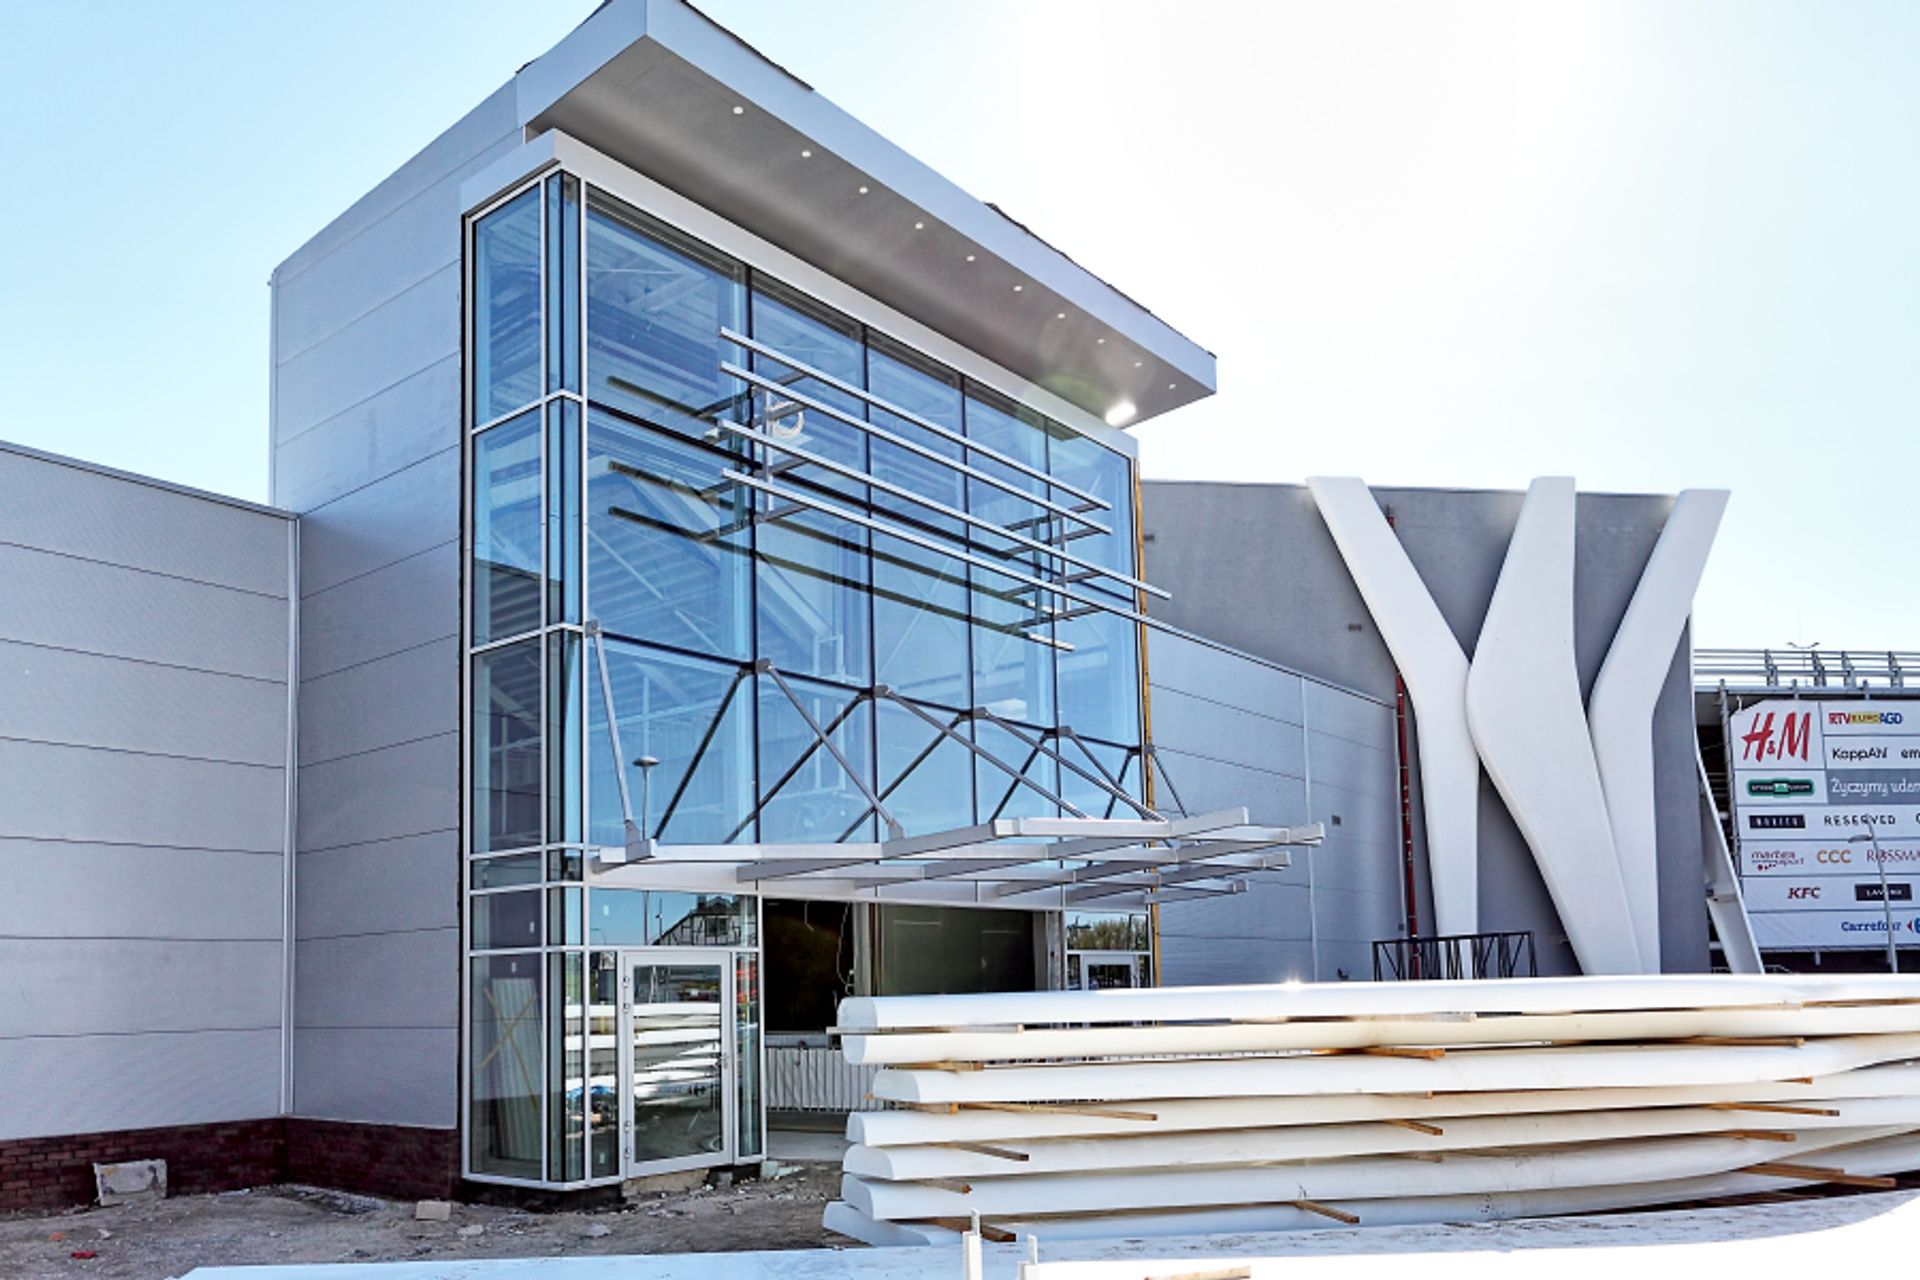  Fasada Galerii Pomorskiej nabiera nowych kształtów, a Carrefour rozpoczyna modernizację